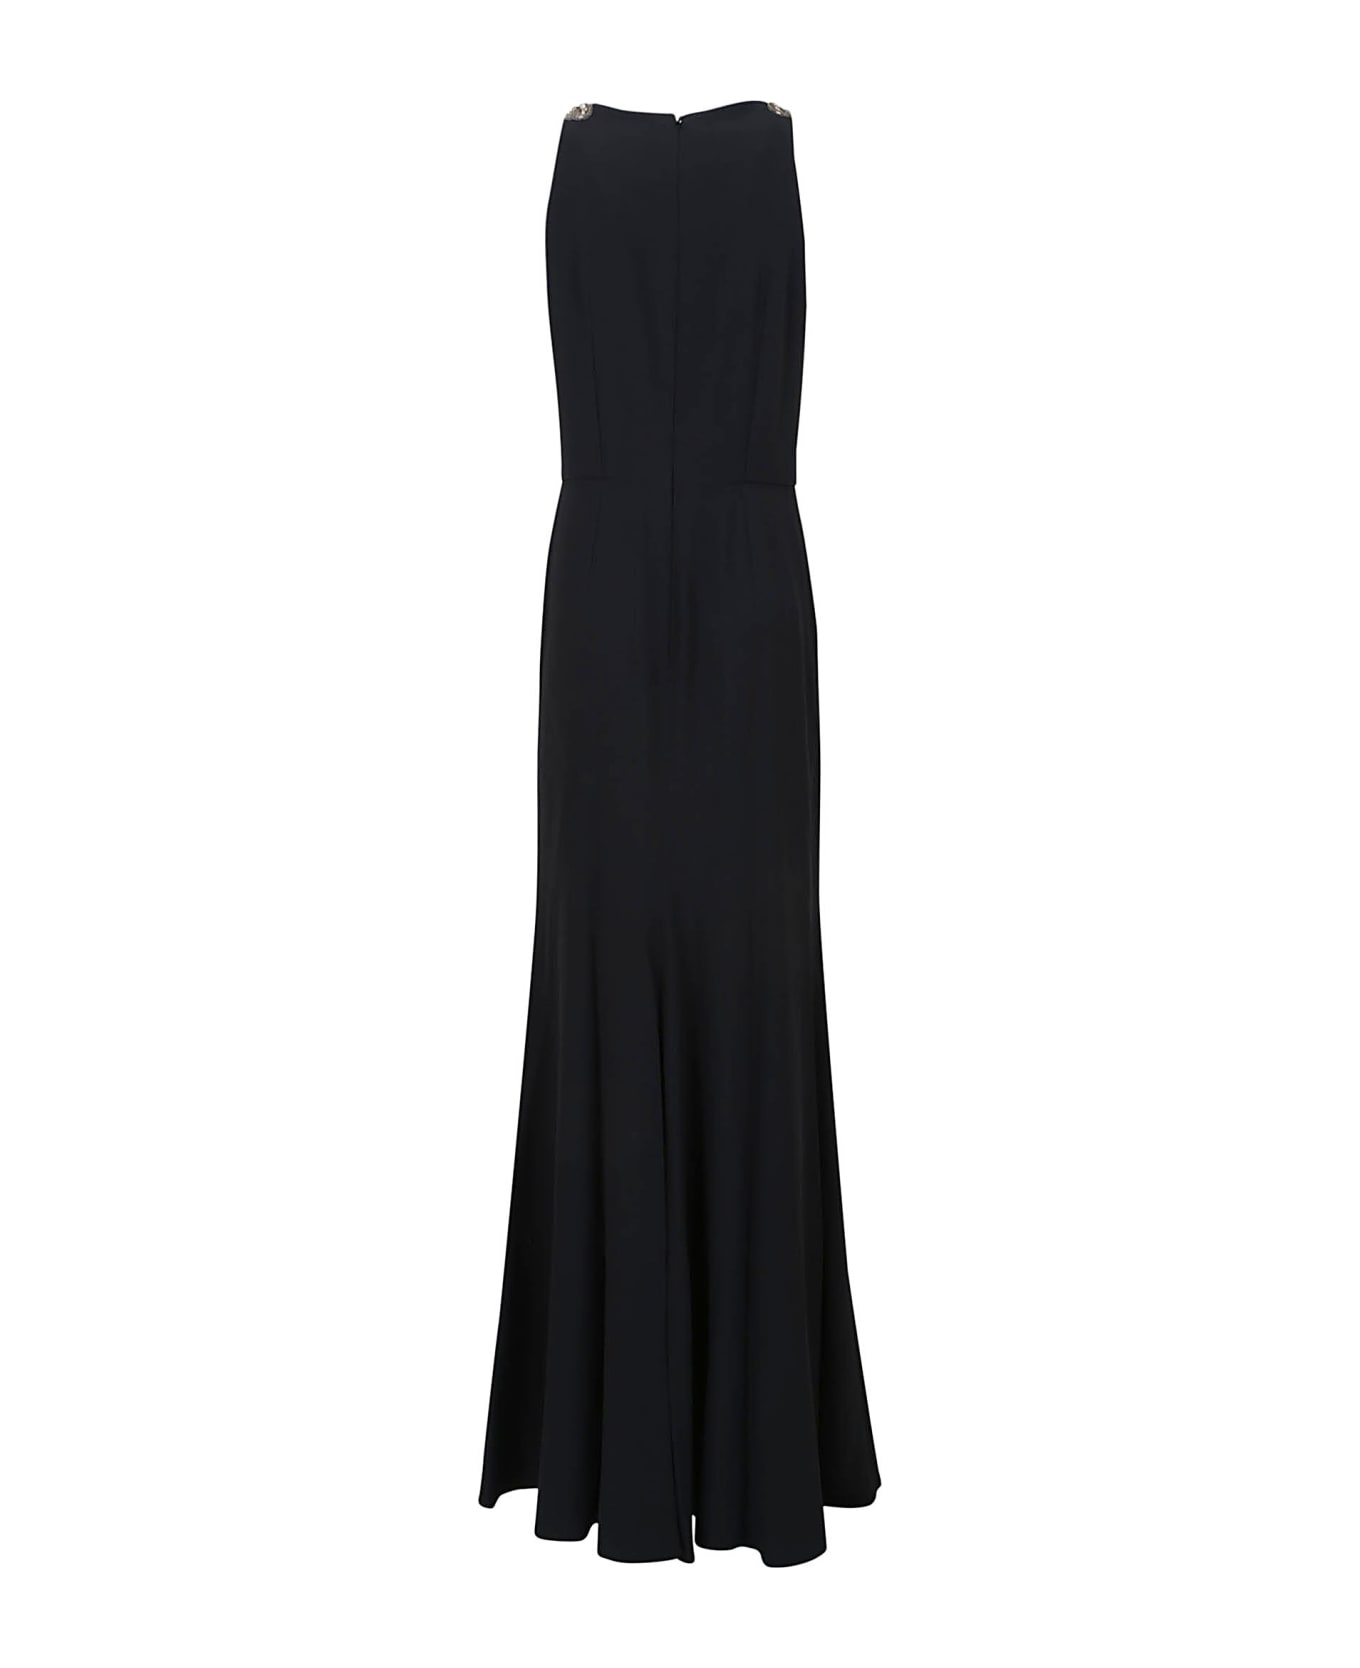 Alexander McQueen Evening Dress - Black